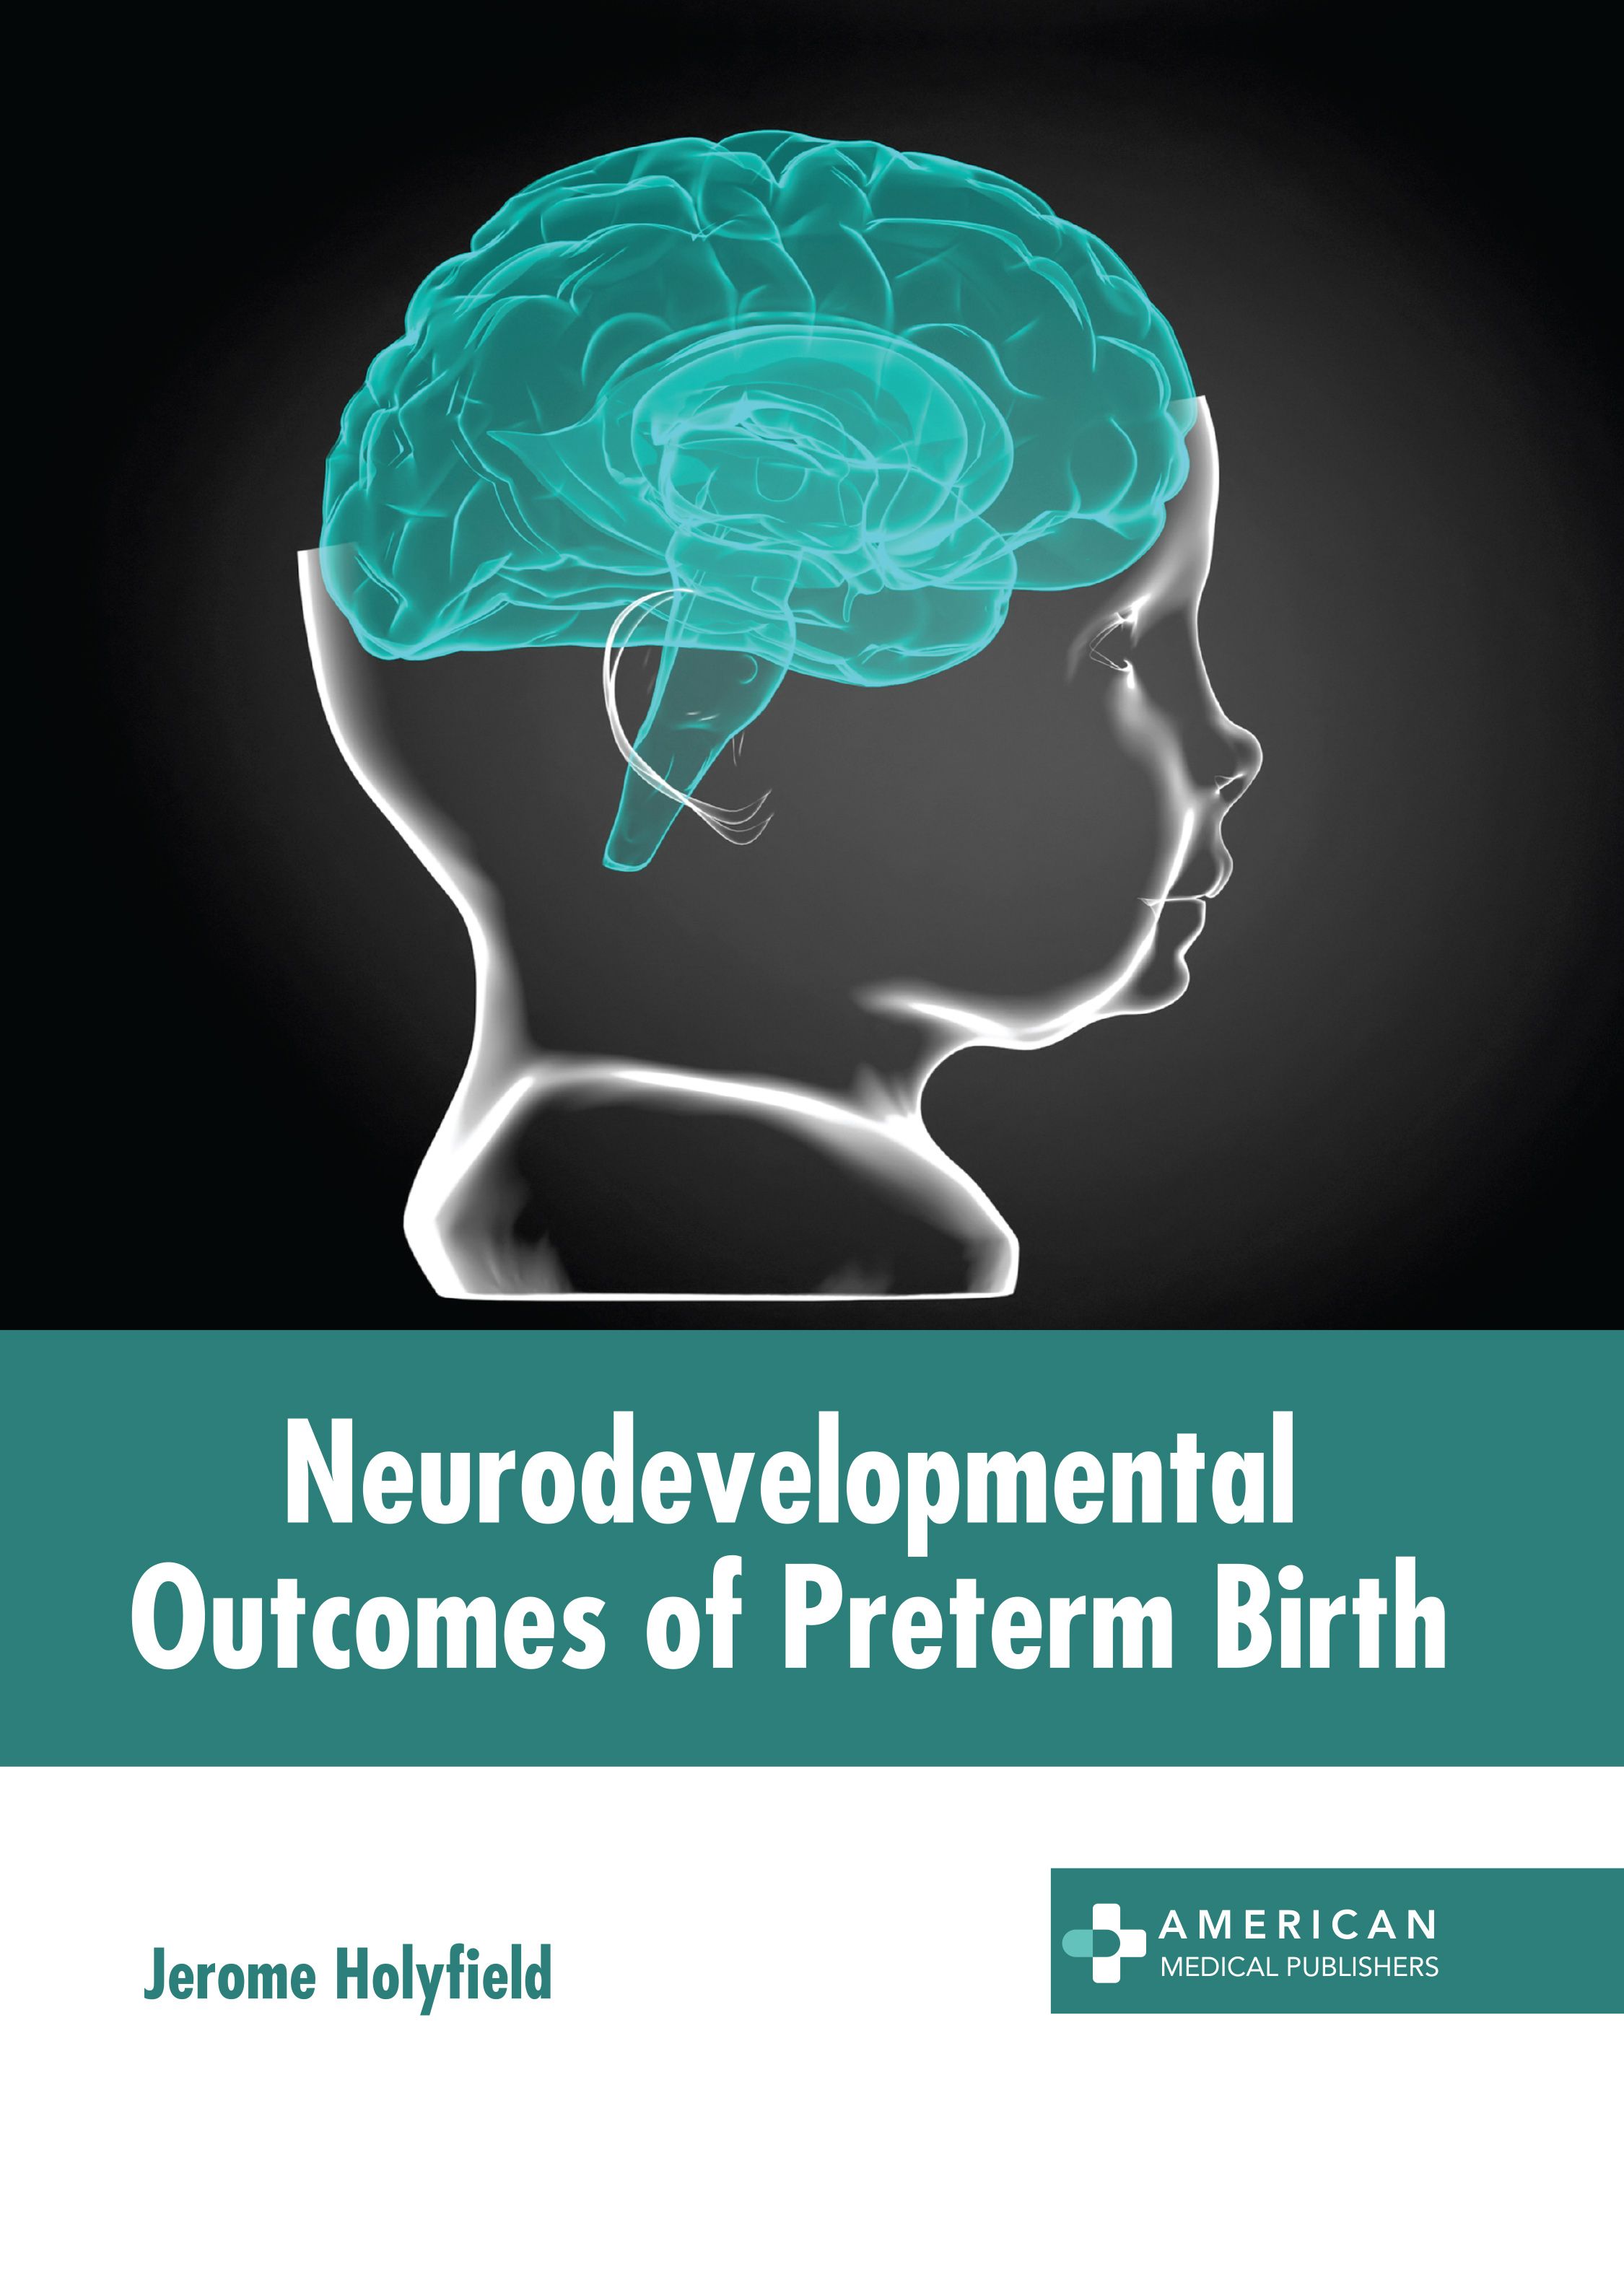 NEURODEVELOPMENTAL OUTCOMES OF PRETERM BIRTH